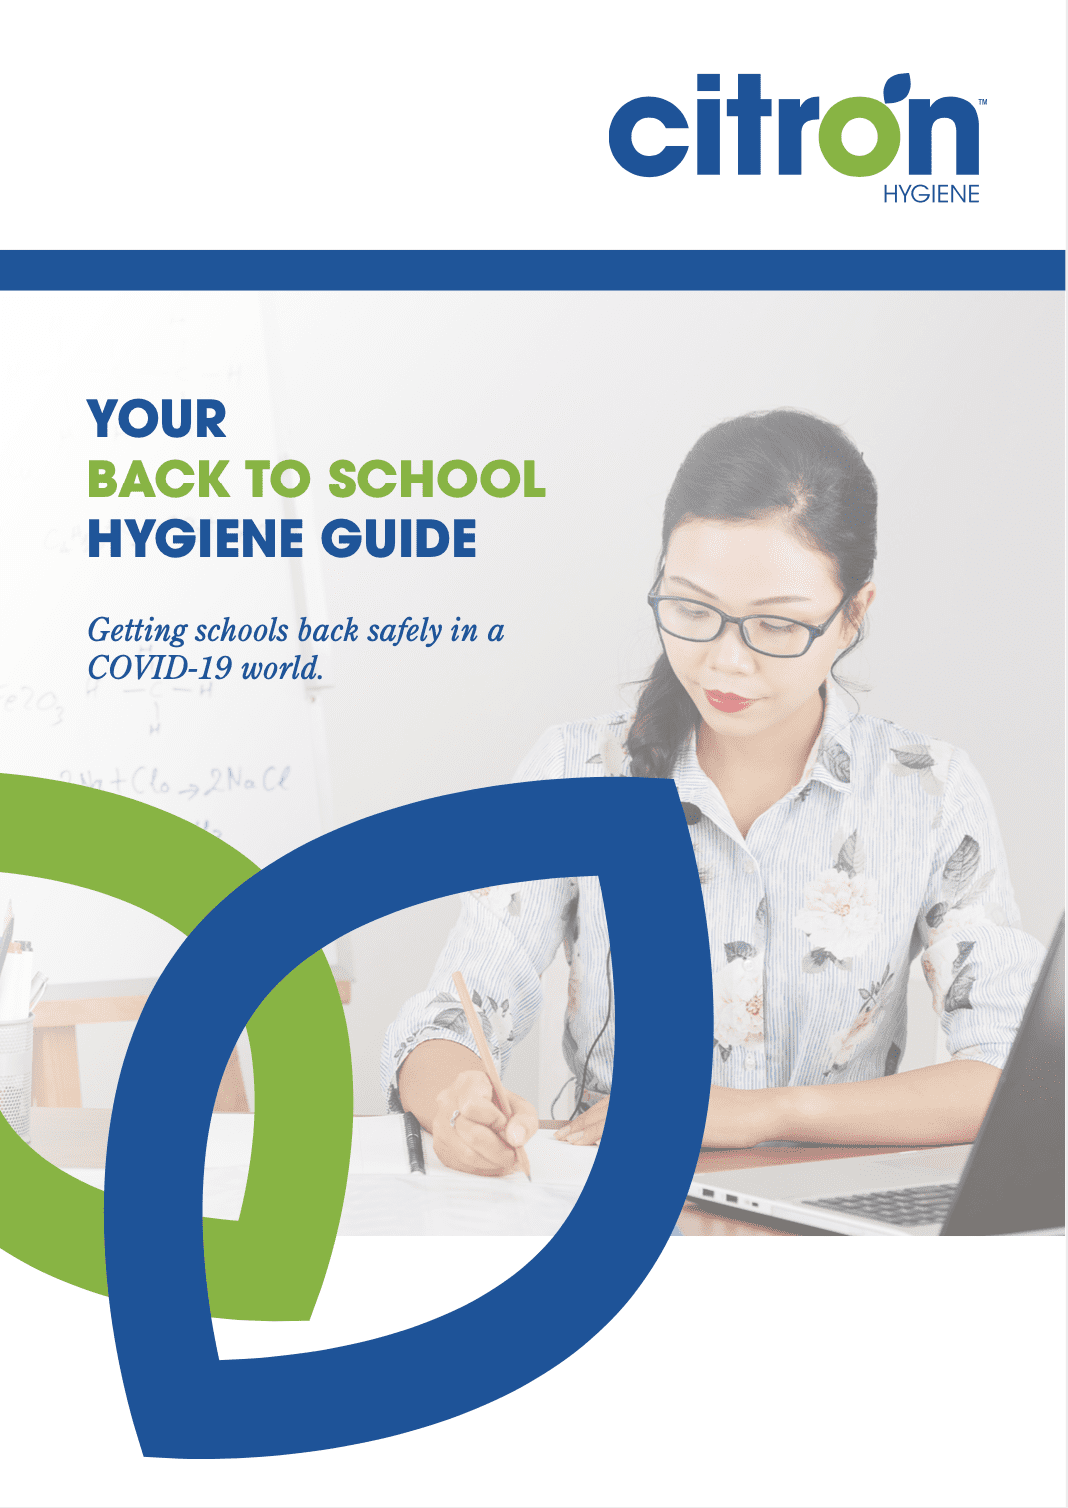 citron school hygiene guide cover